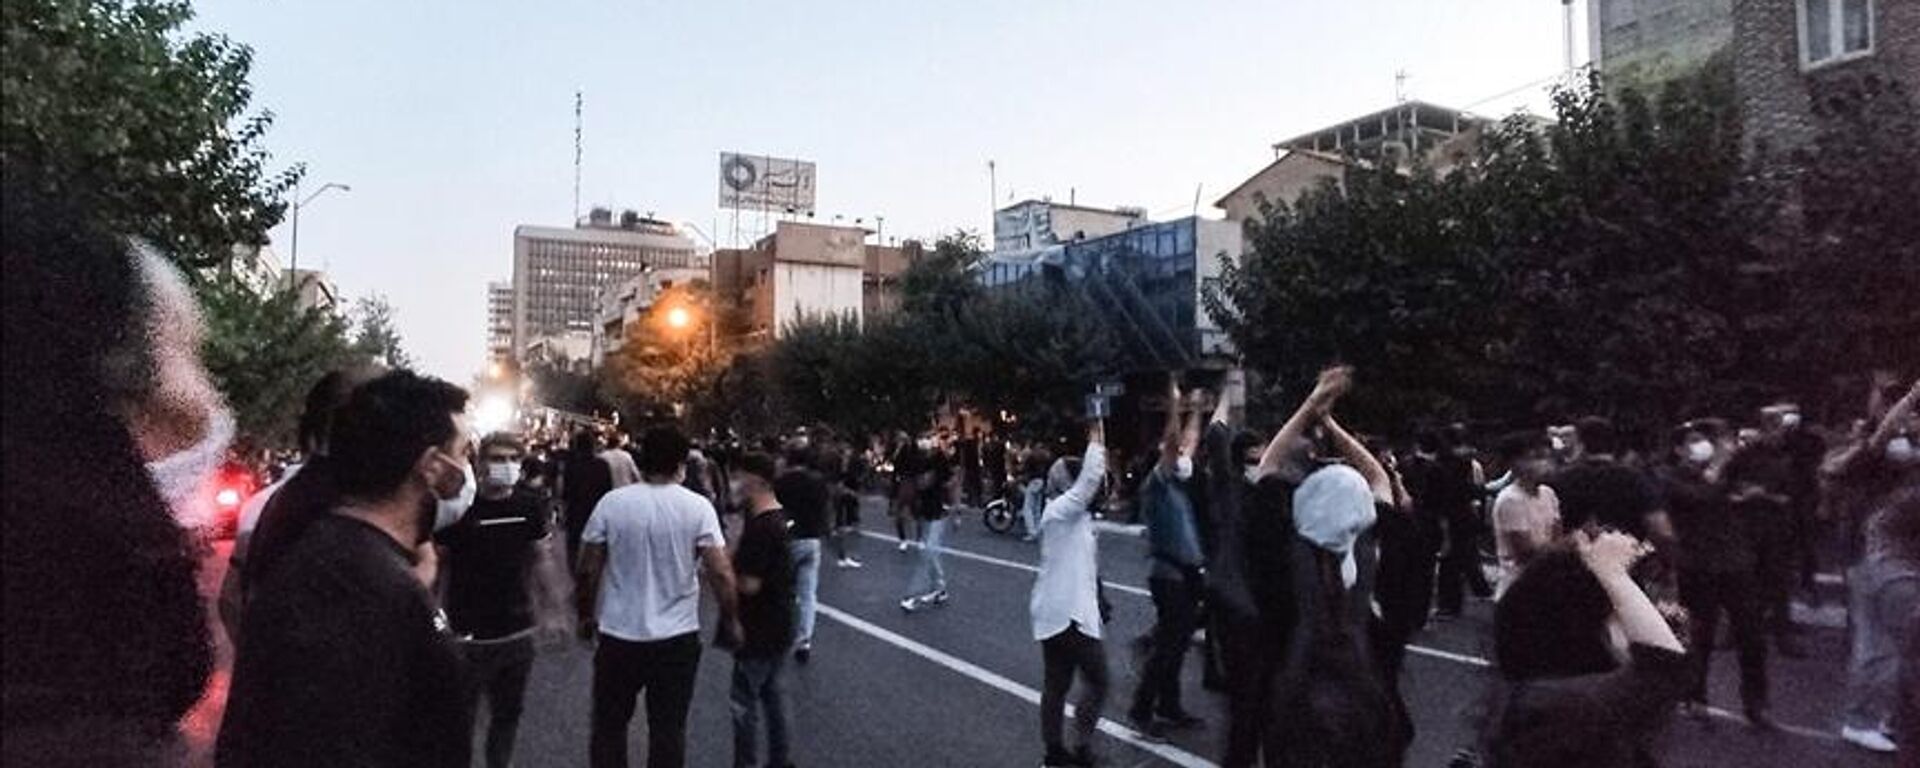 İran'da, Mahsa Emini'nin ölümünün ardından başlayan gösteriler 19. gününü geride bırakırken, ülkede protesto düzenleyen lise öğrencileri dikkati çekiyor. - Sputnik Türkiye, 1920, 09.11.2022